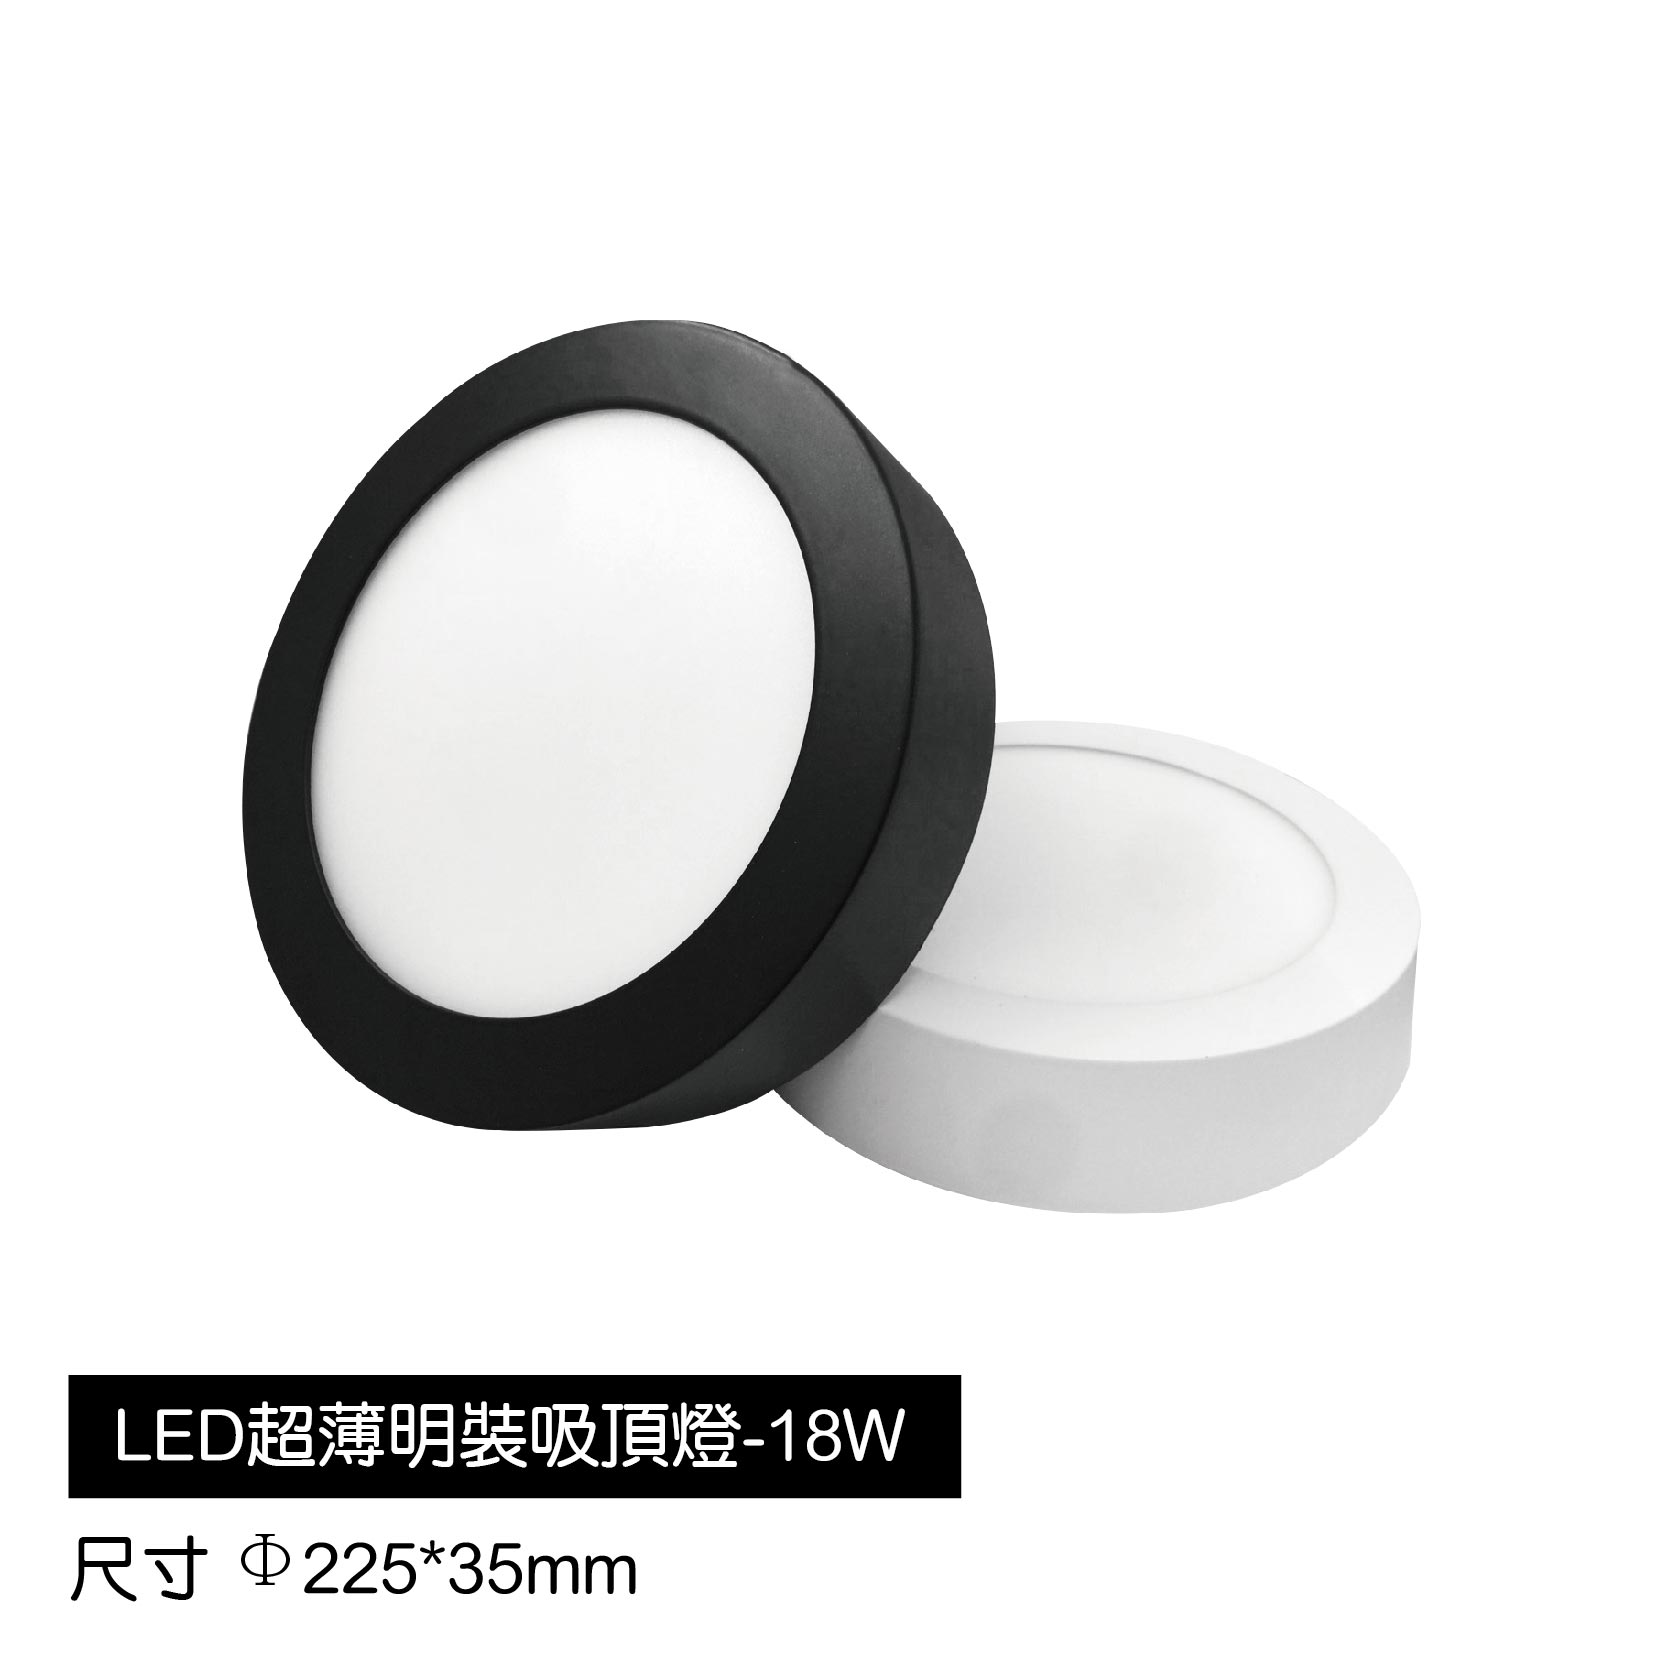 LED超薄明裝吸頂燈-18W(白)